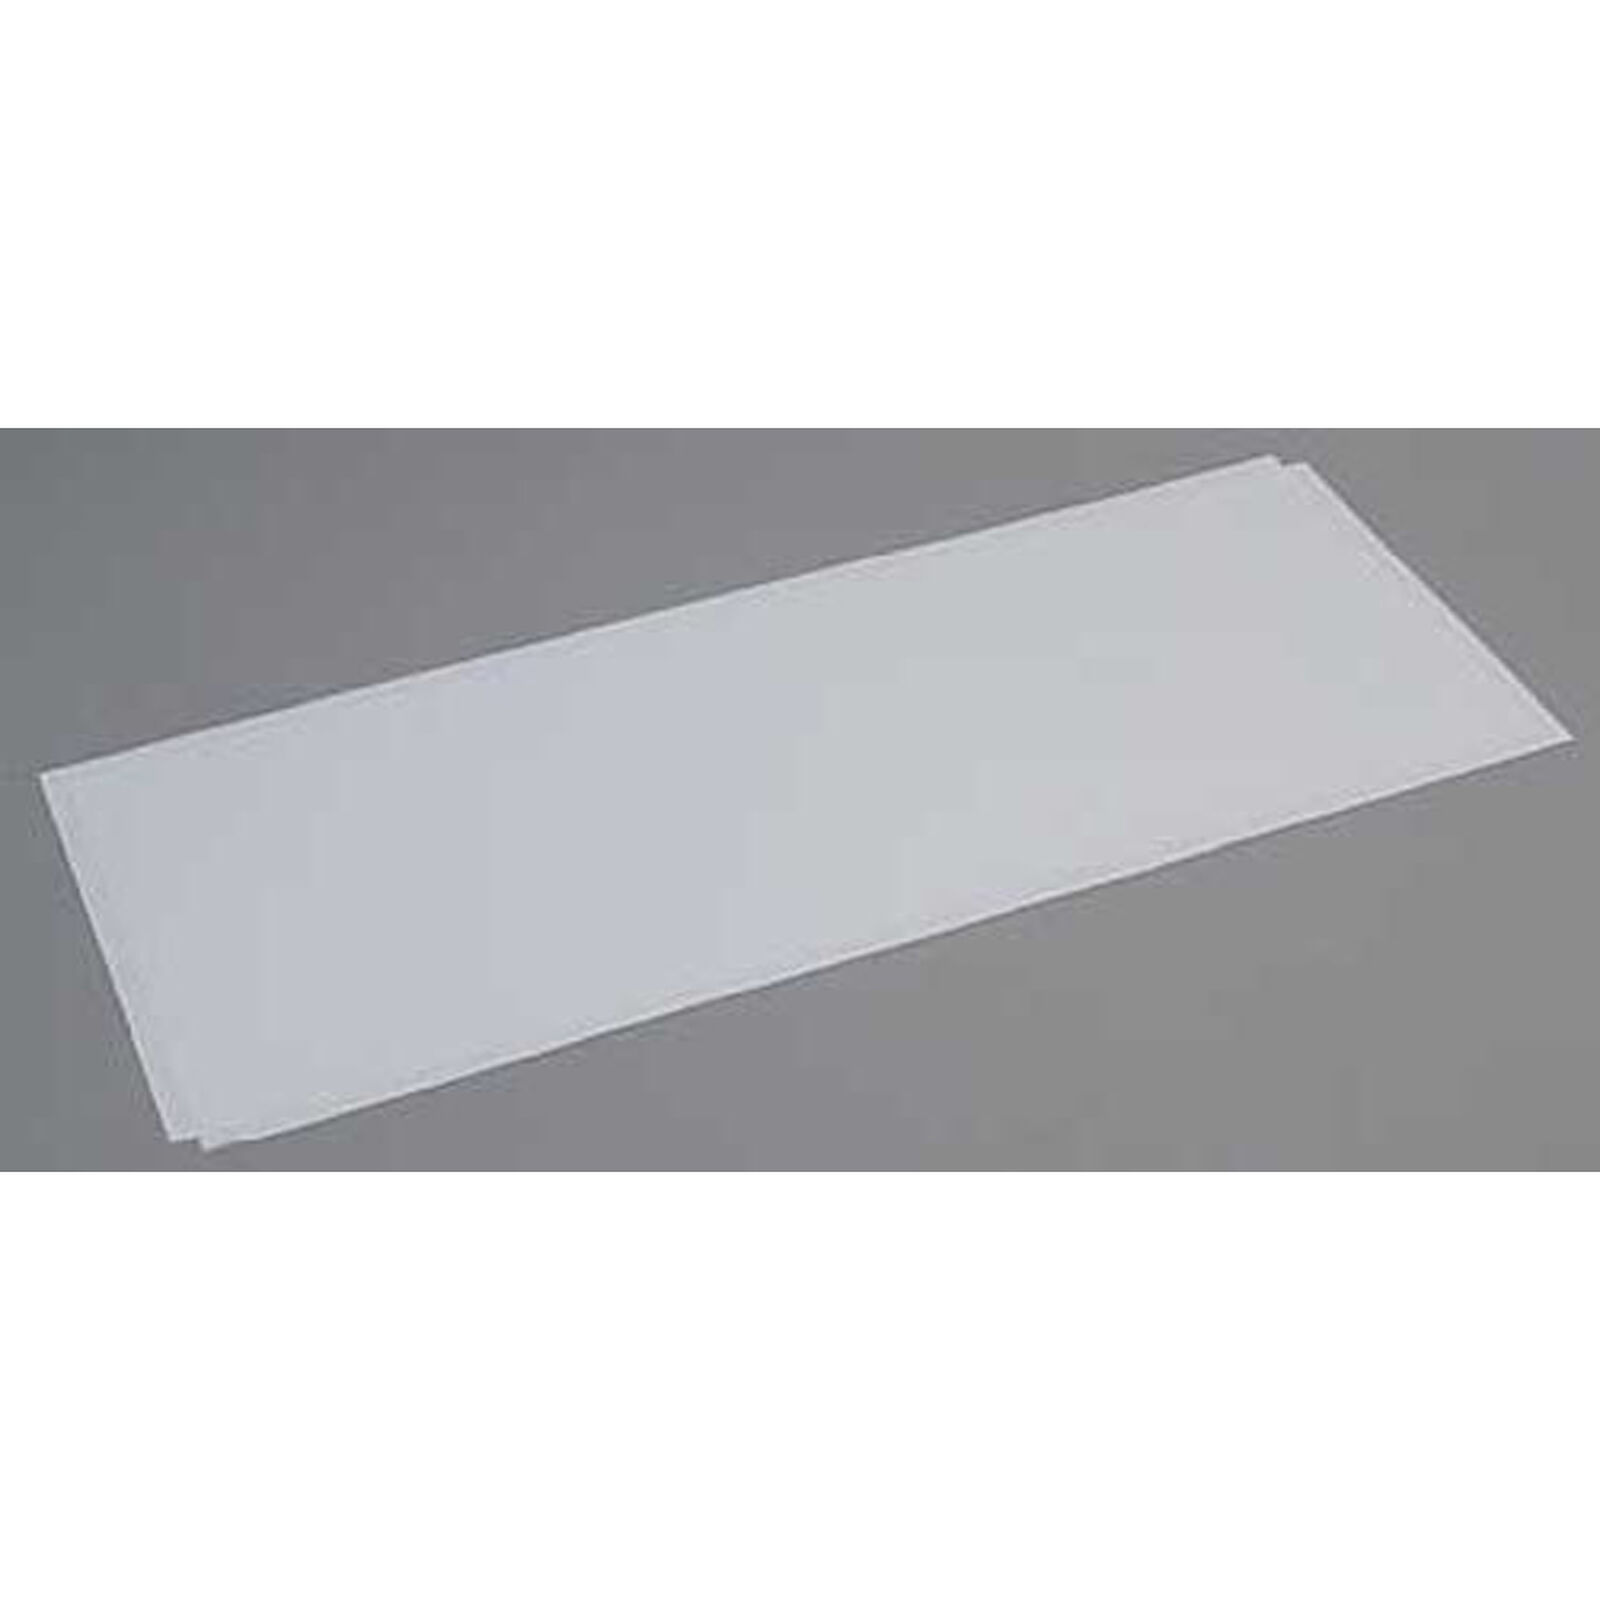 White Sheet .080 x 8 x 21 (2)